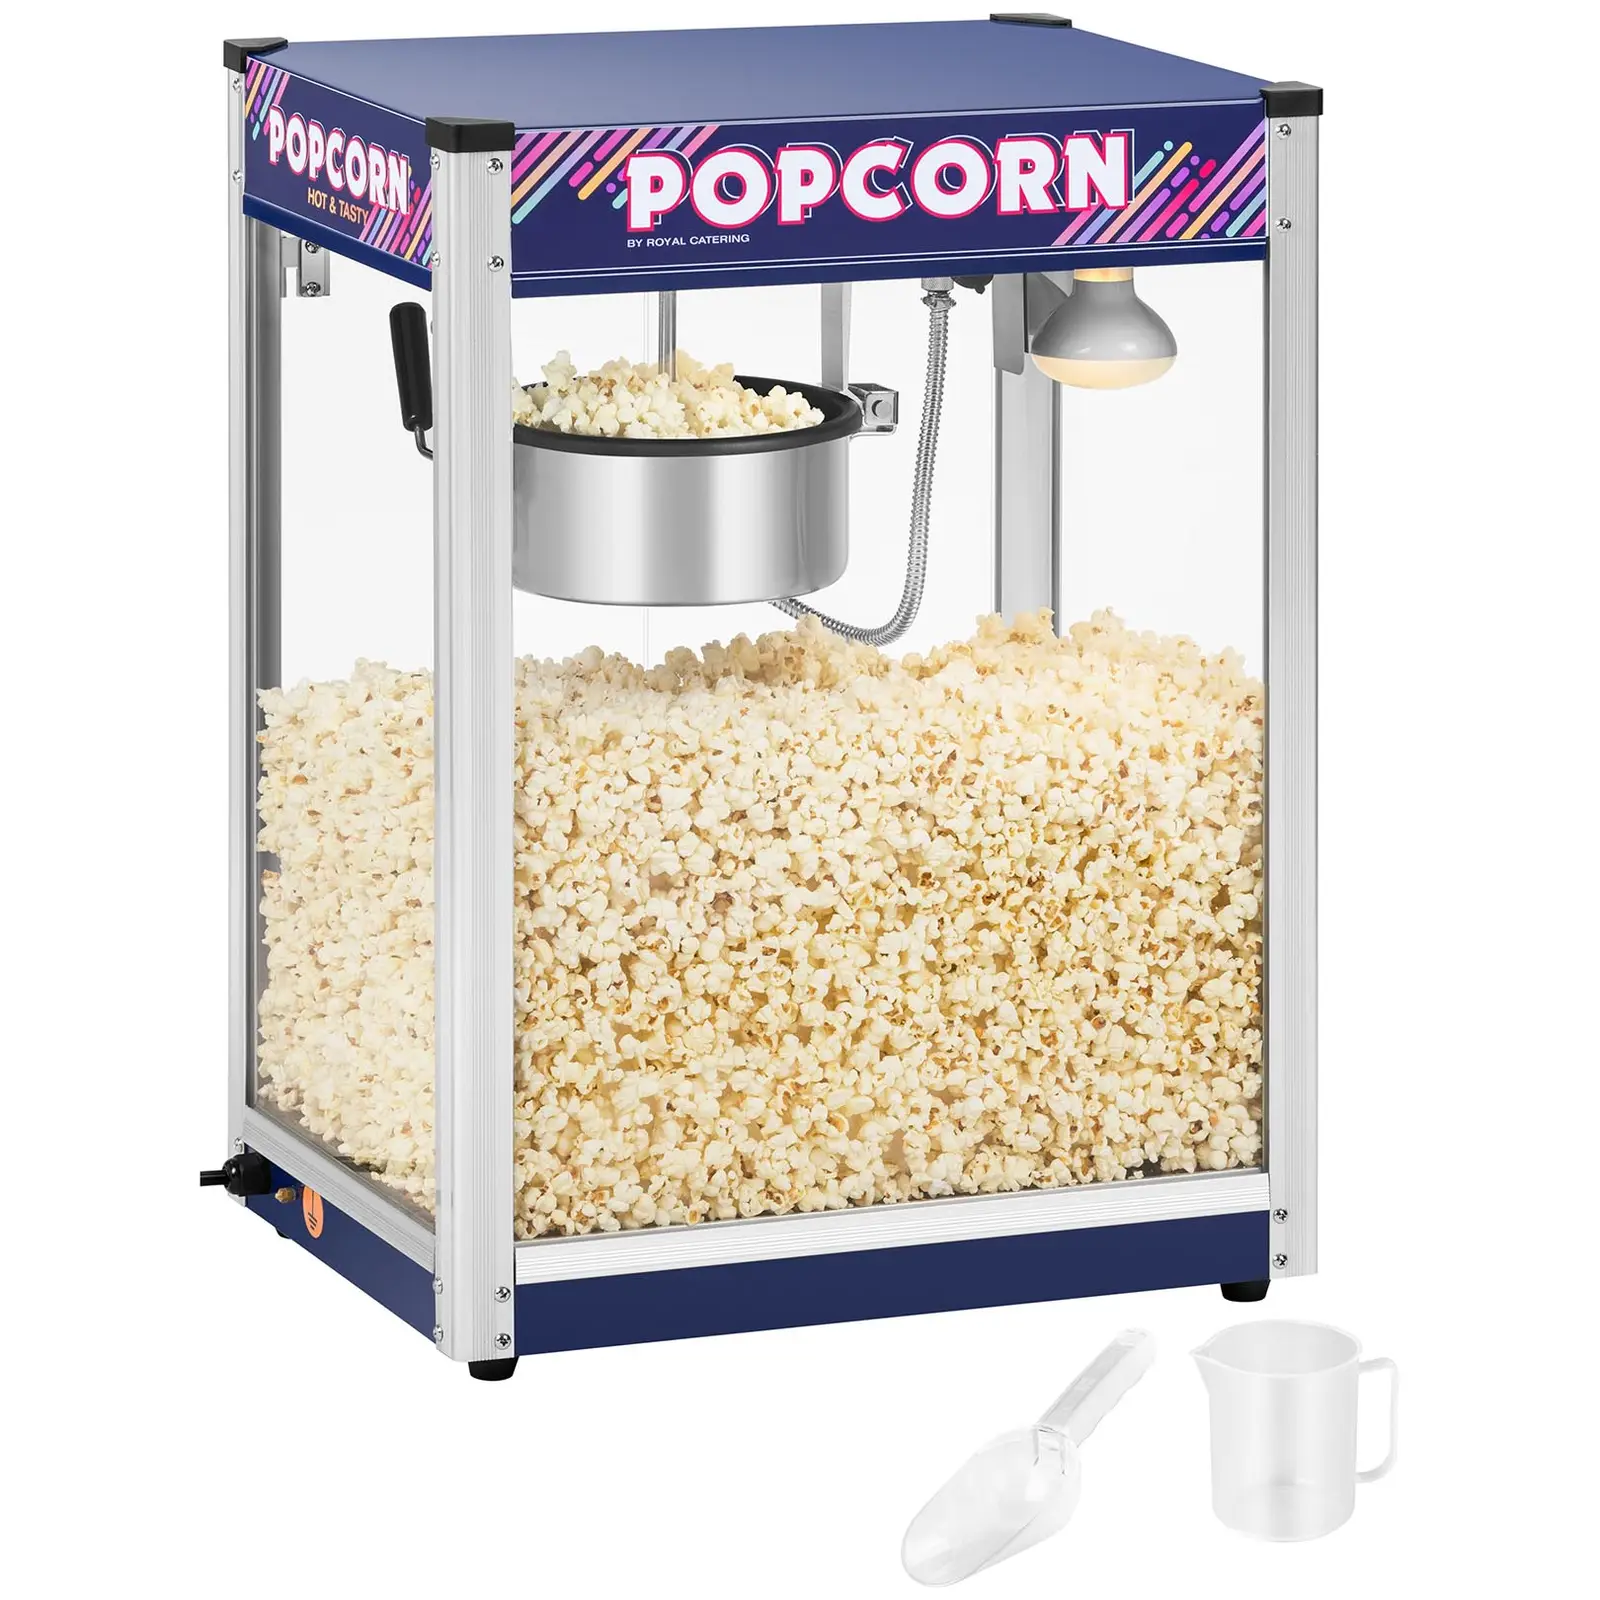 Stroj na popcorn - červený - 8 oz